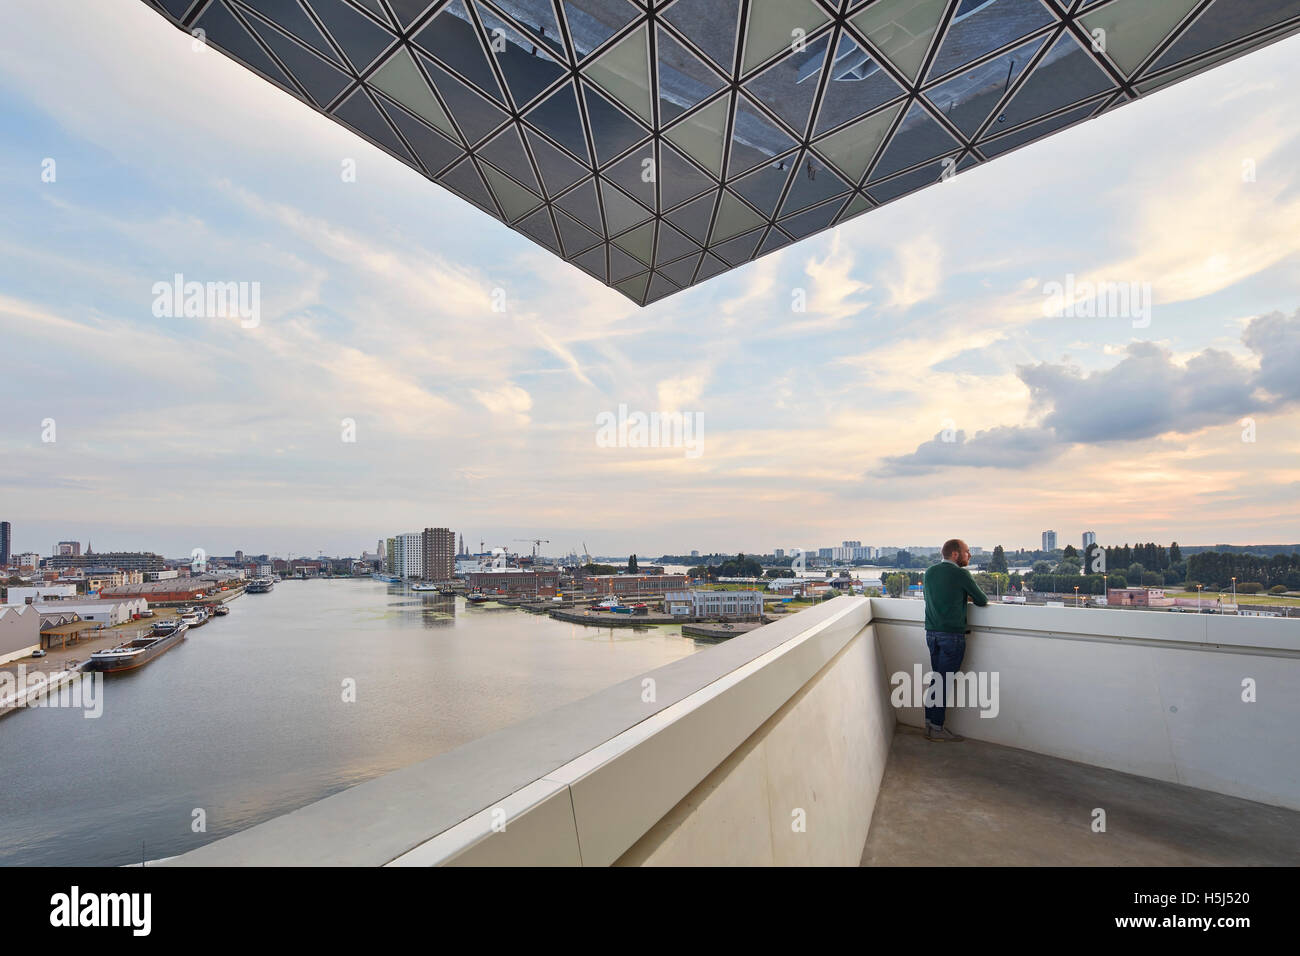 Piattaforma di Osservazione verso il fiume e la città. Casa porta ad Anversa, Belgio. Architetto: Zaha Hadid Architects, 2016. Foto Stock